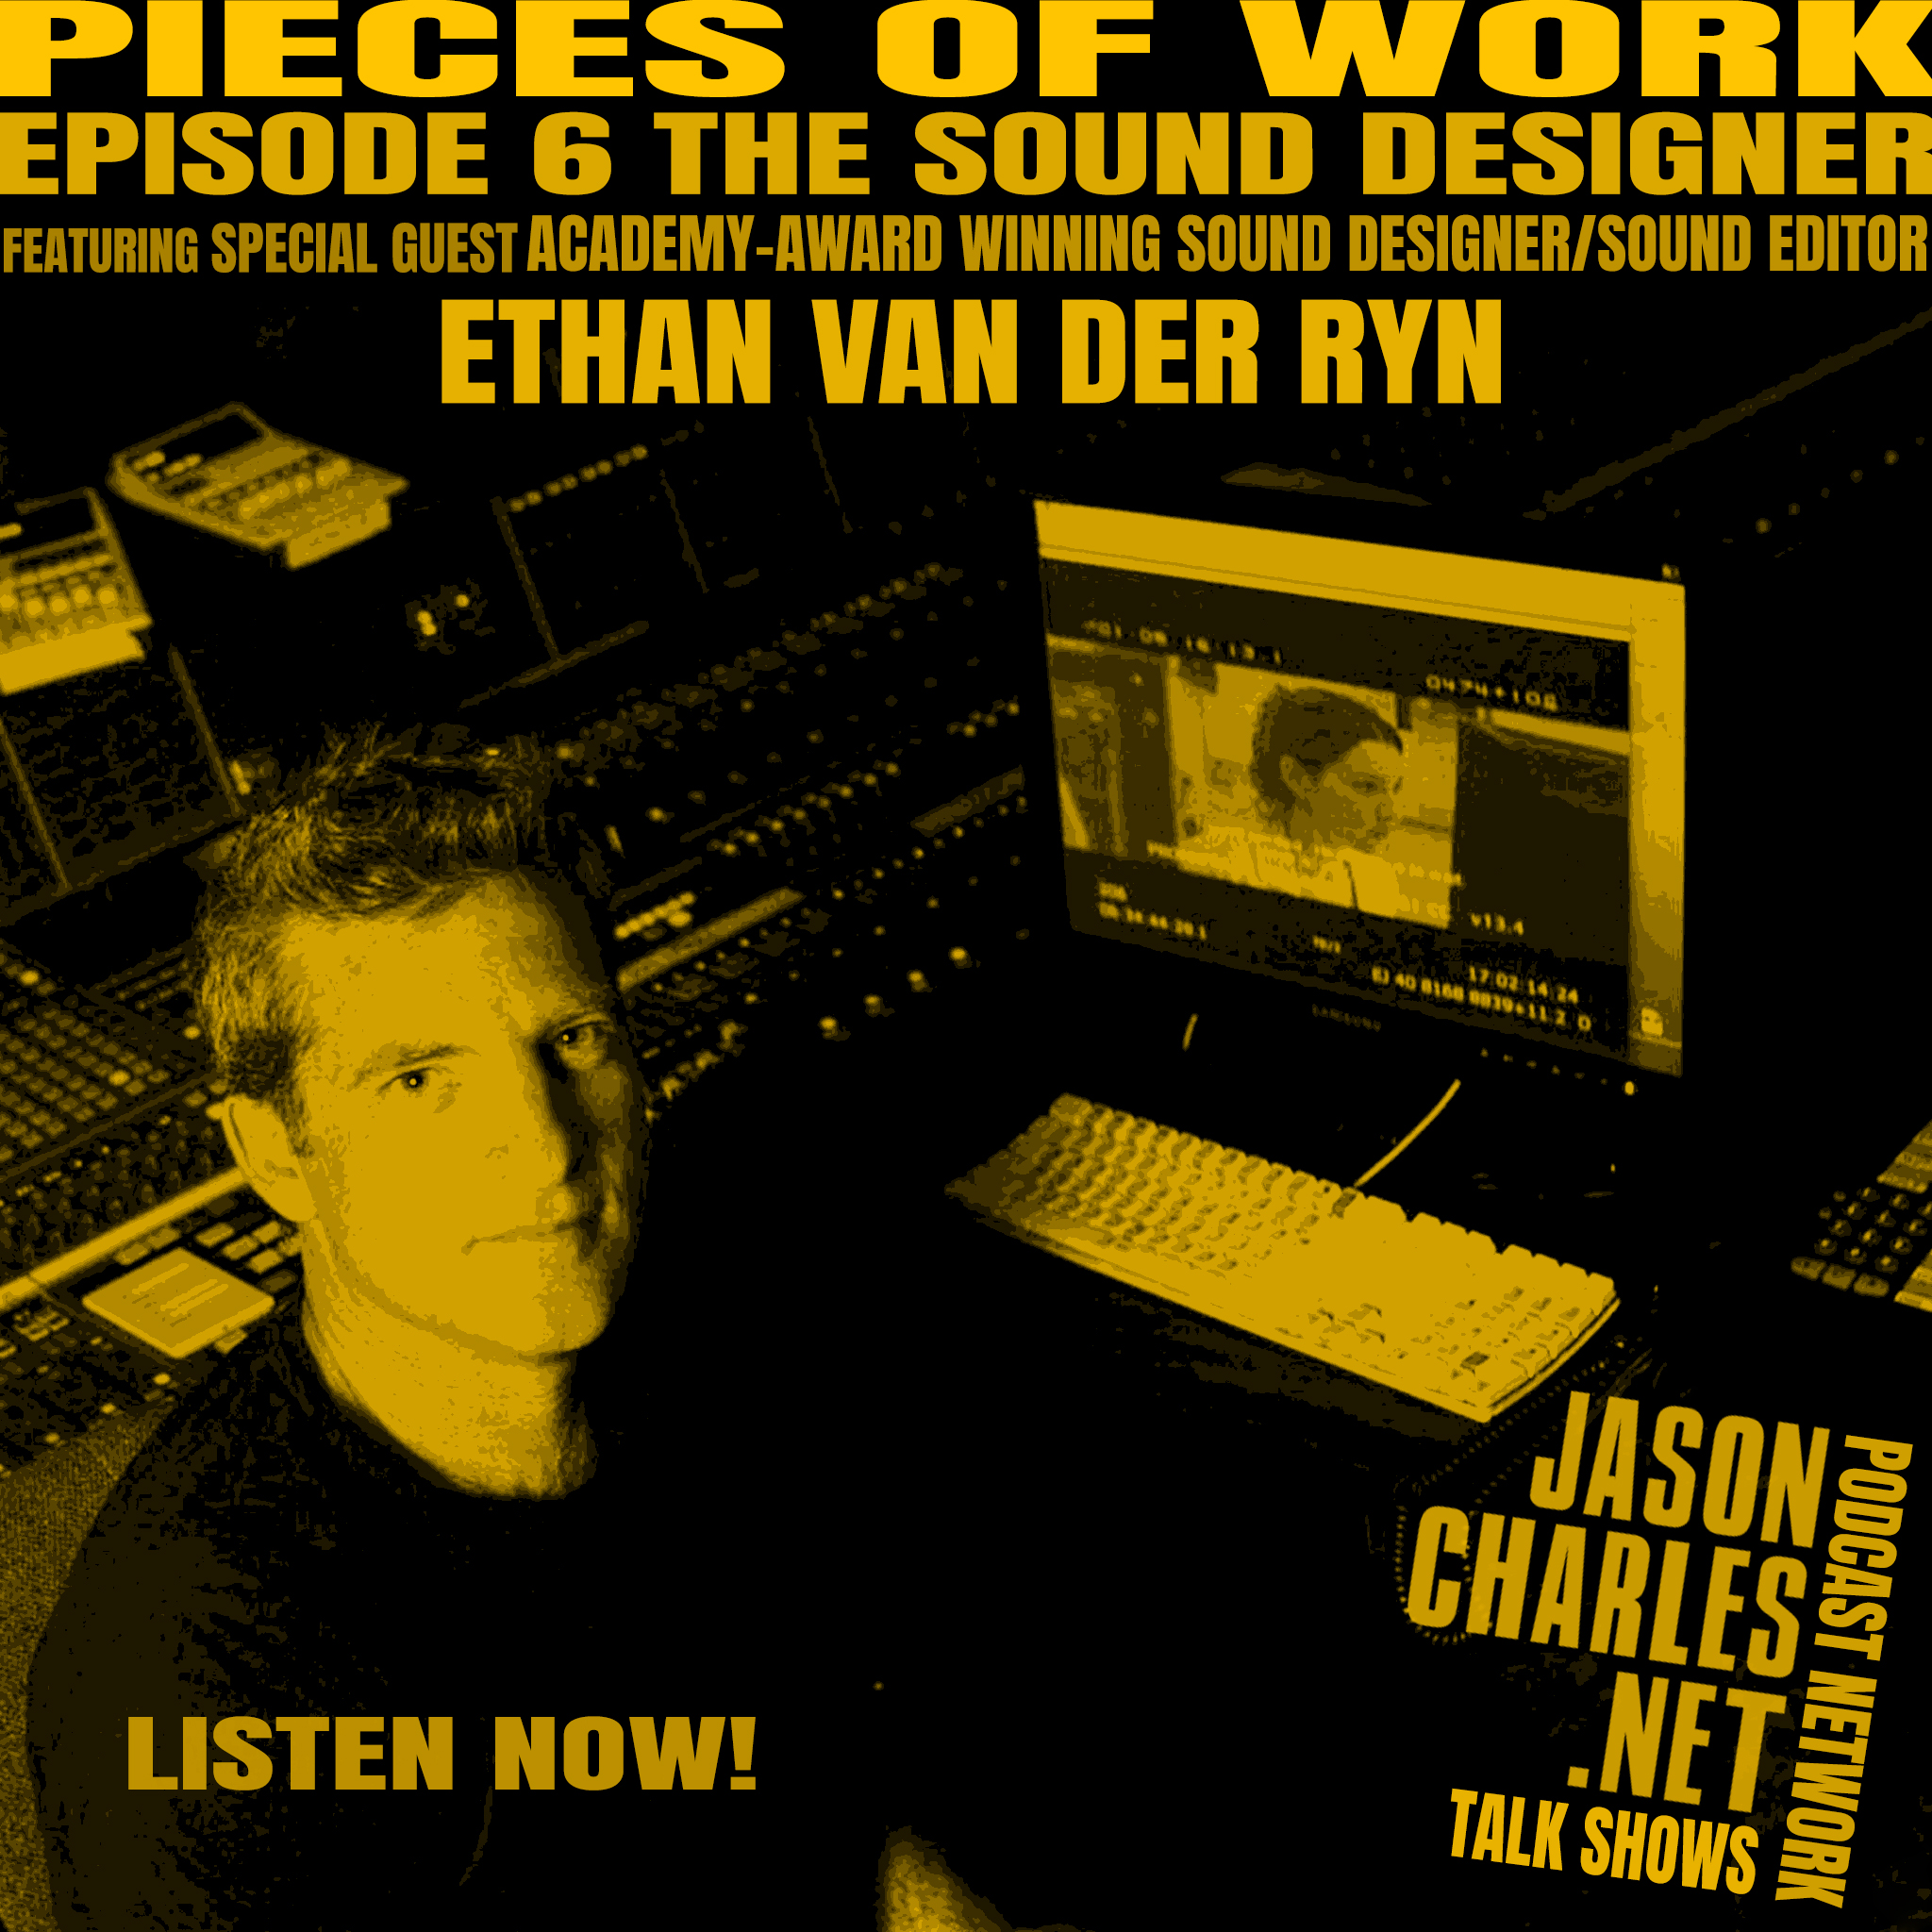 PIECES OF WORK Episode 6 The Sound Designer